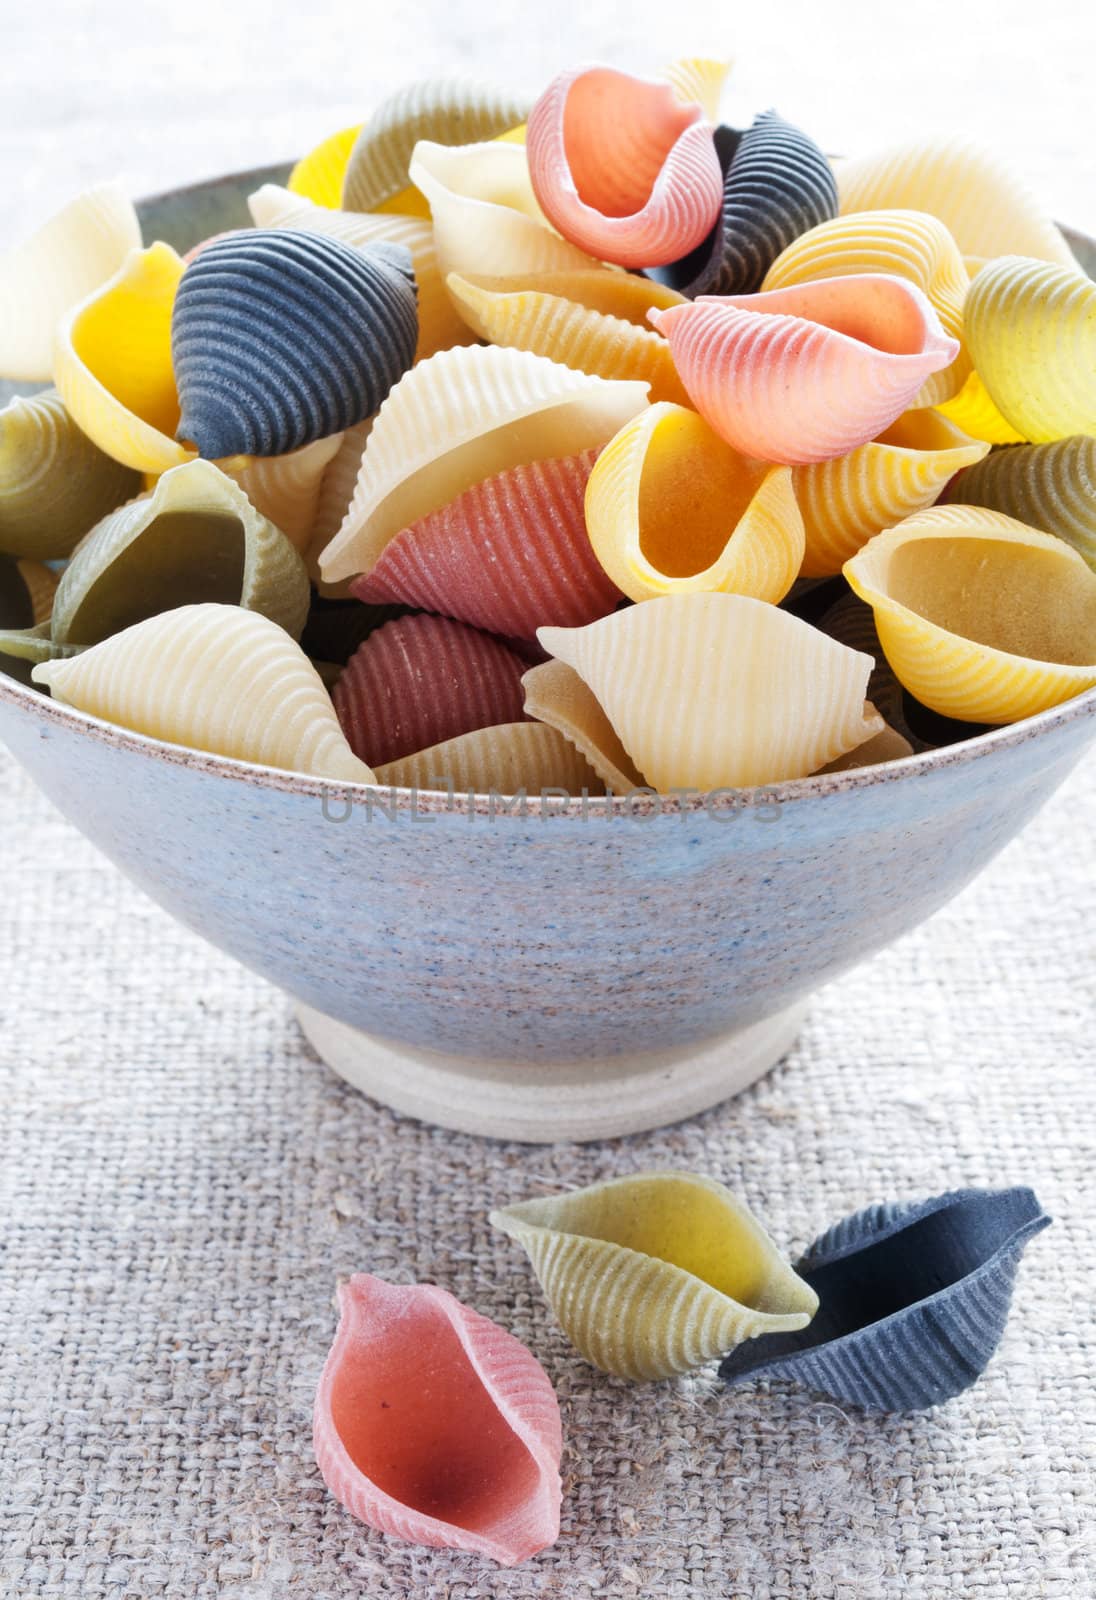 Italian multi colored pasta by Nanisimova